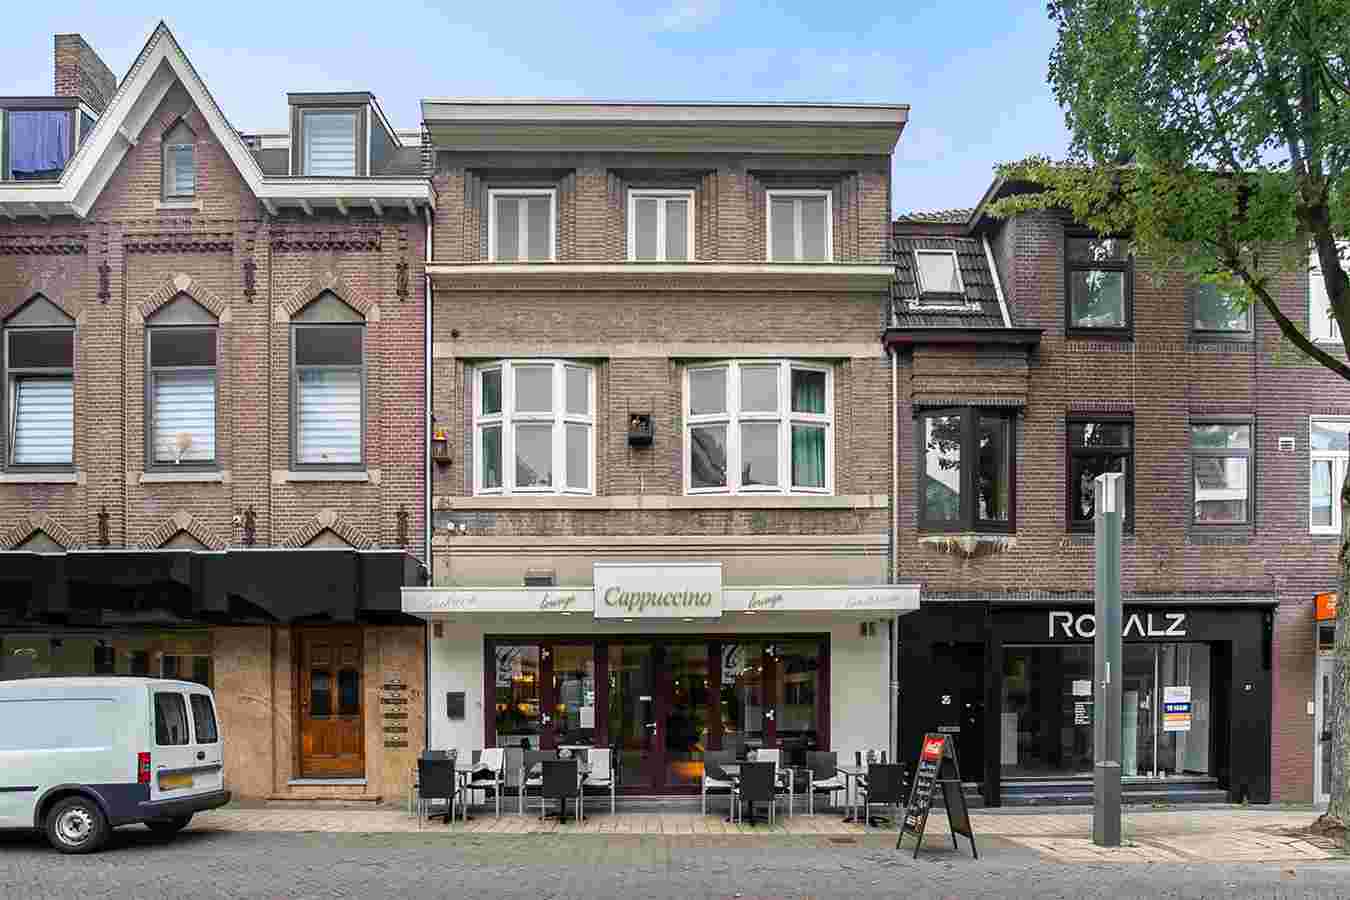 Honigmannstraat 33 - 35